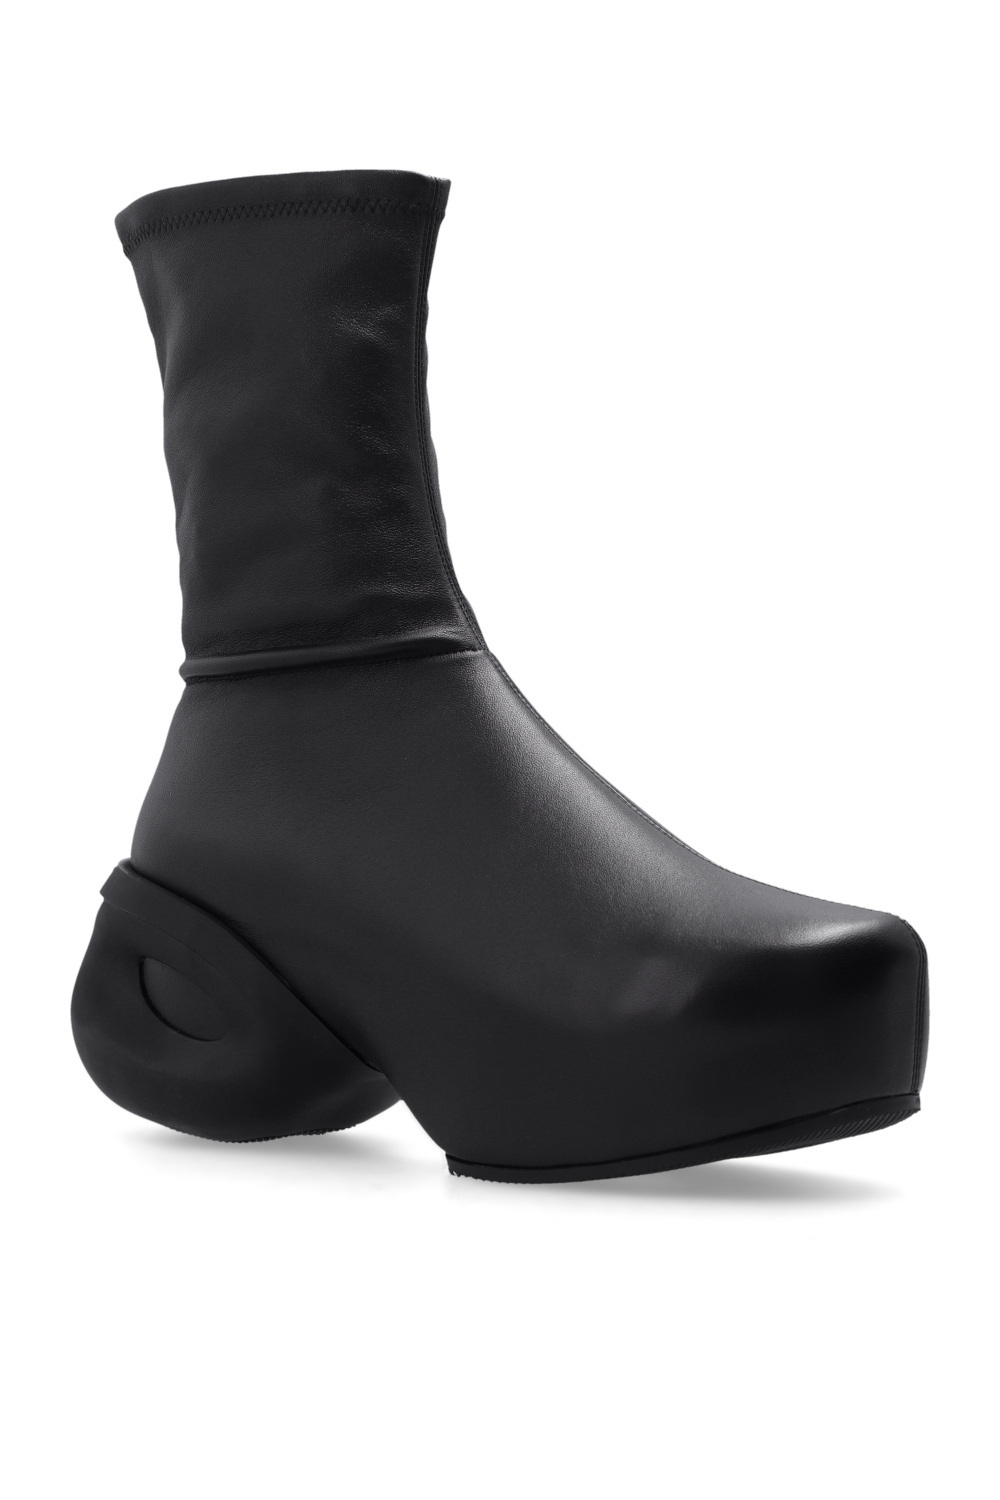 givenchy bag ‘G Clog’ platform ankle boots